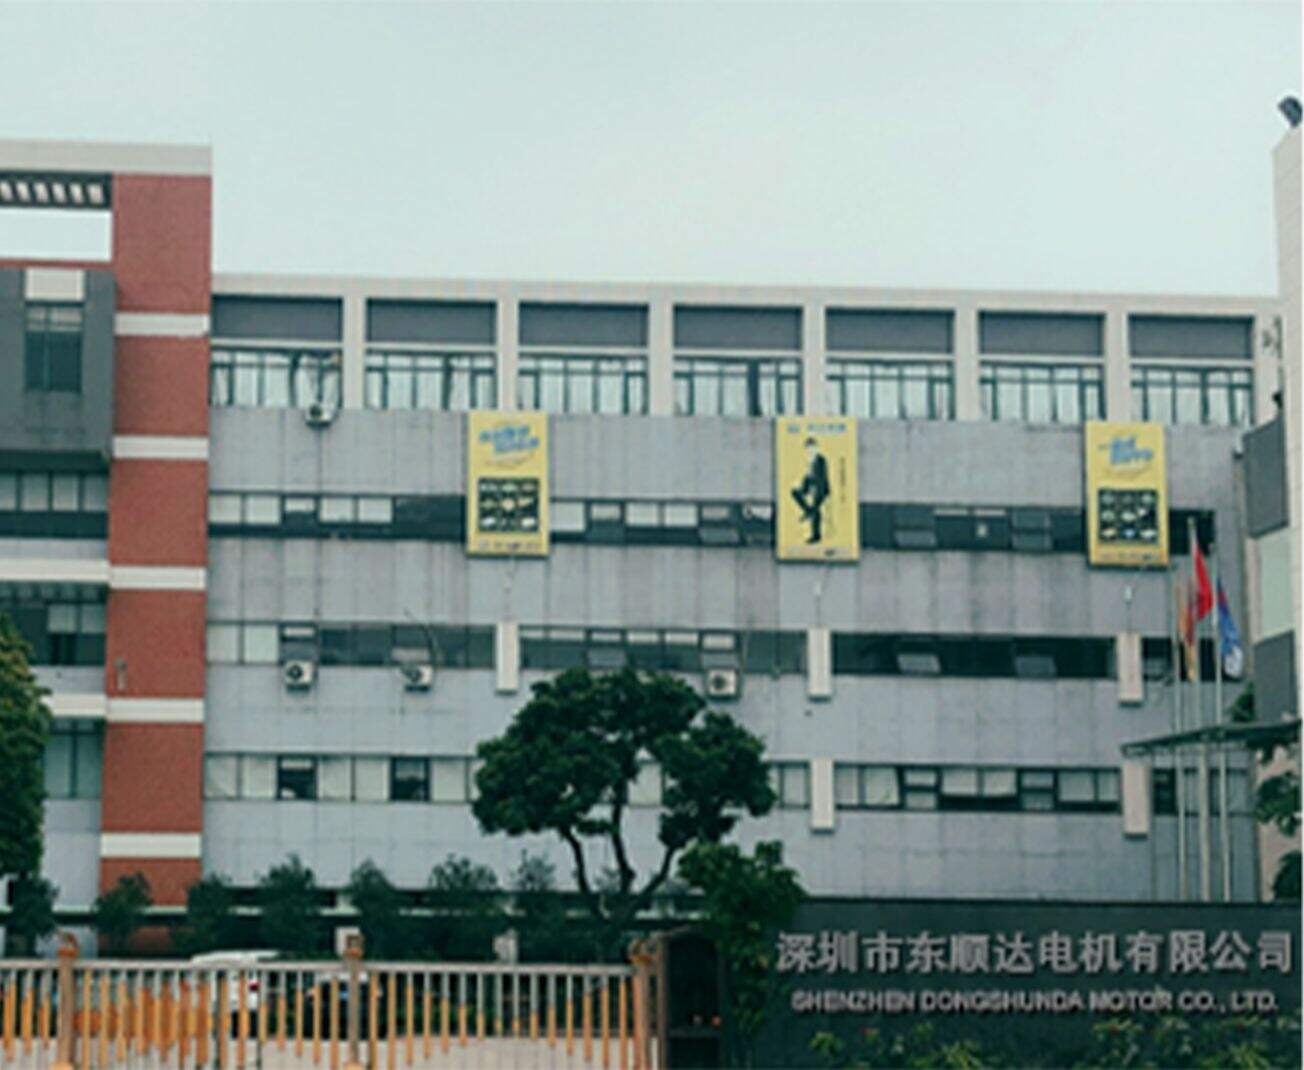 Shenzhen Dongshunda Motor Co.